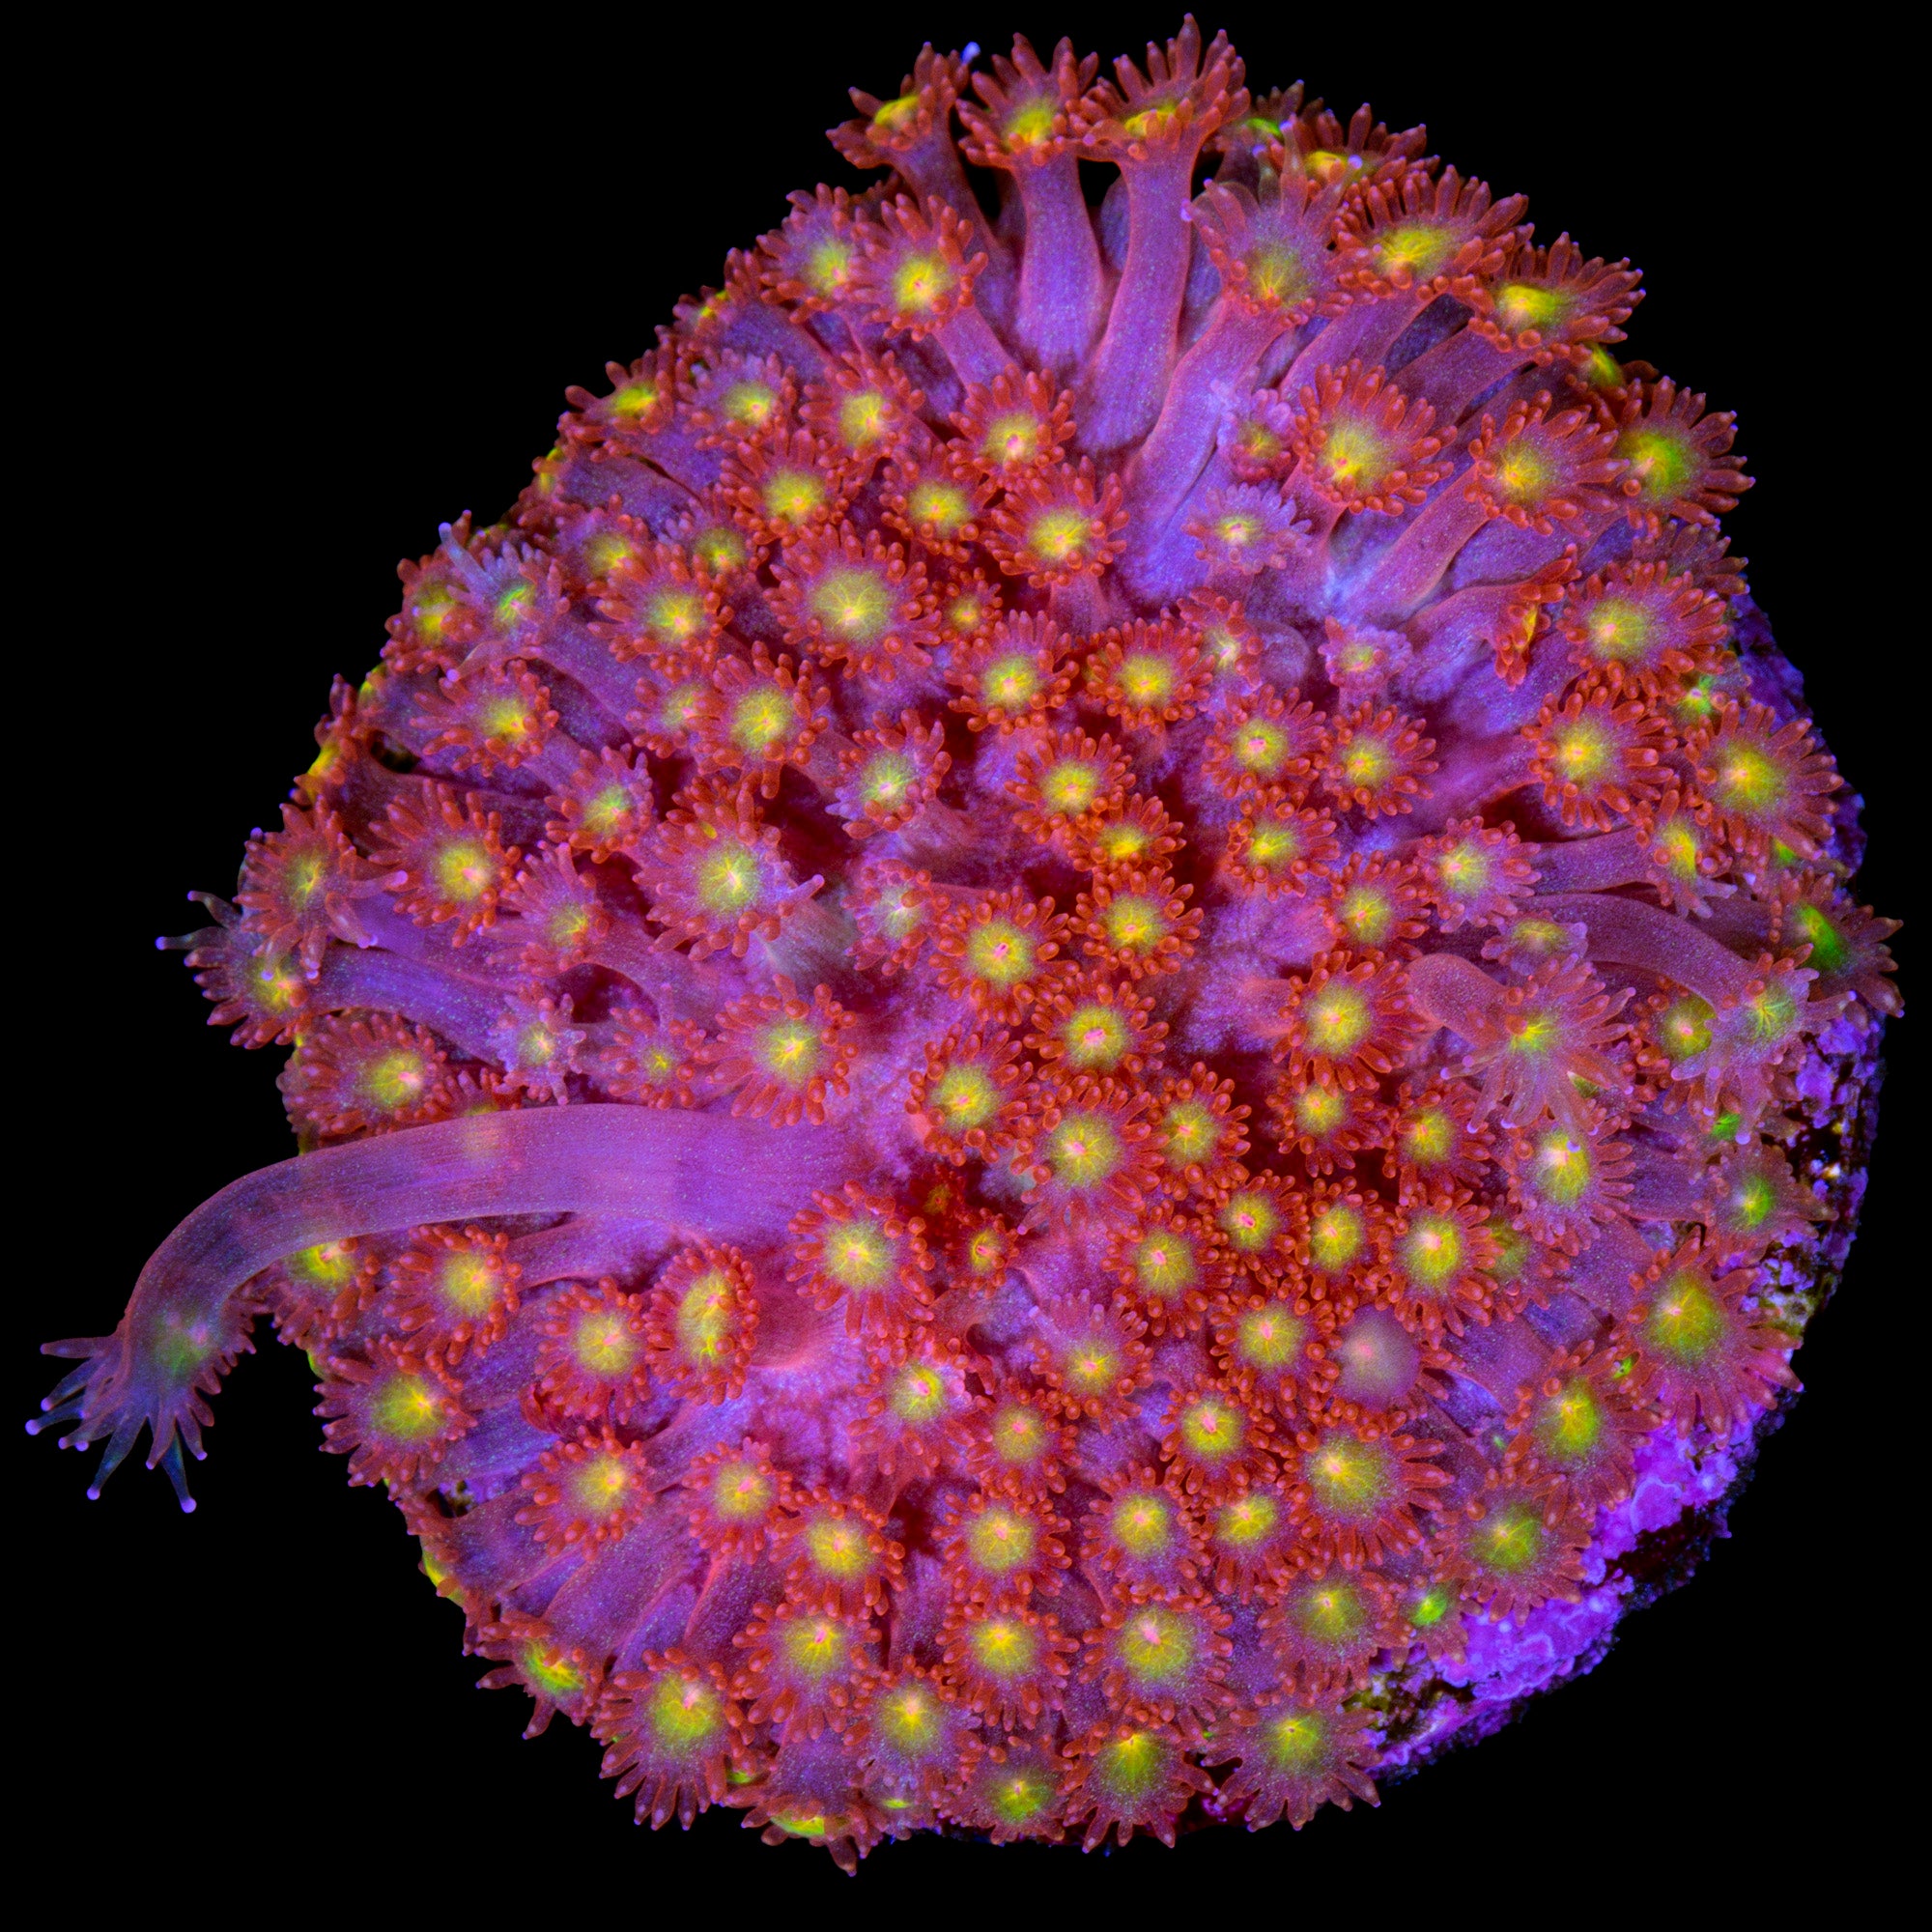 Strawberry Fields Goniopora Coral